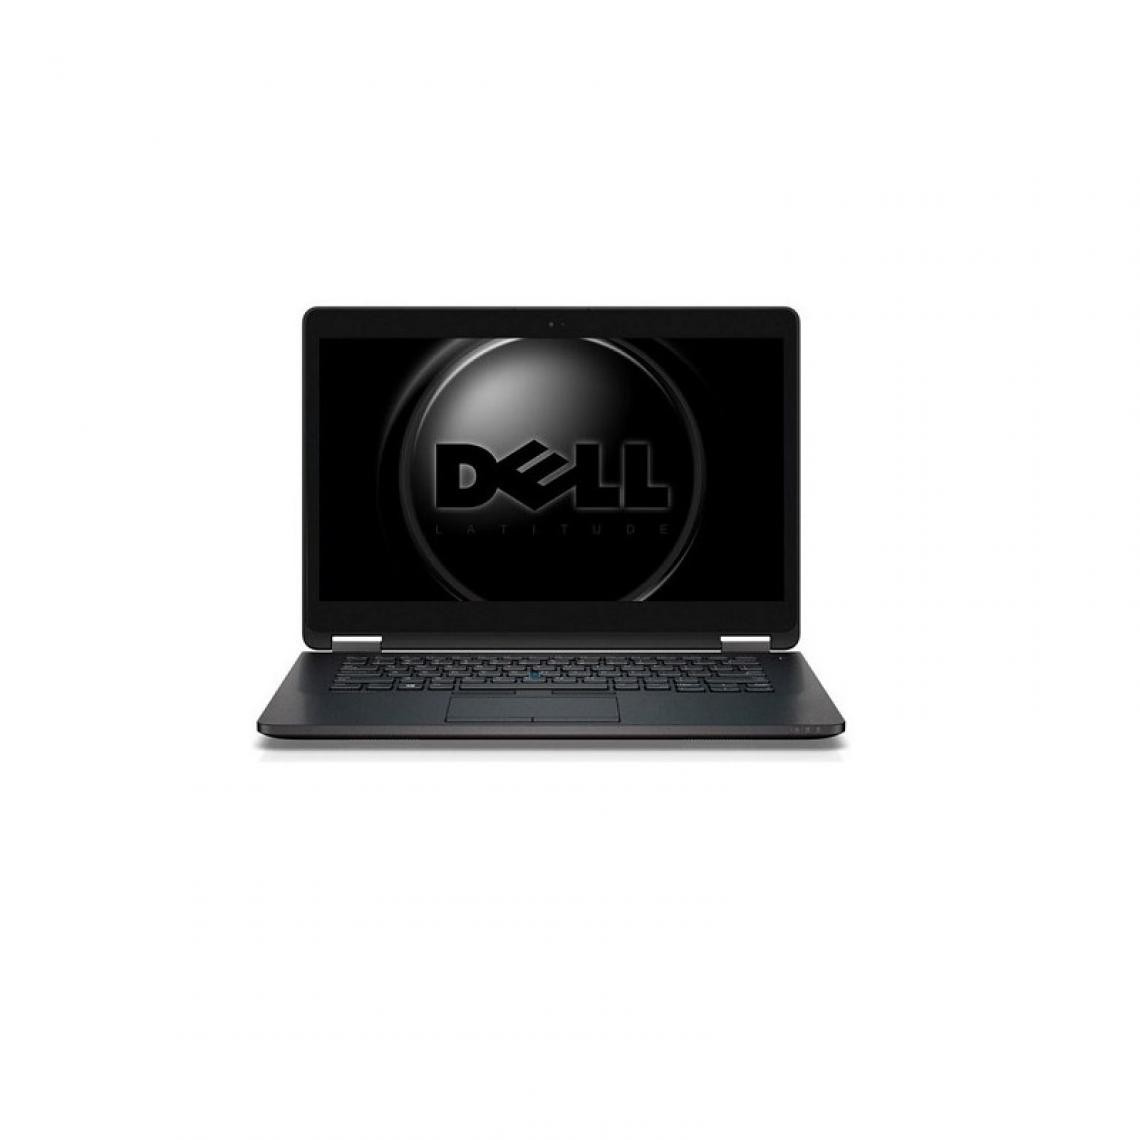 Dell - DELL LATITUDE E7470 INTEL CORE I5 6200U 2.3GHZ AZERTY - PC Portable